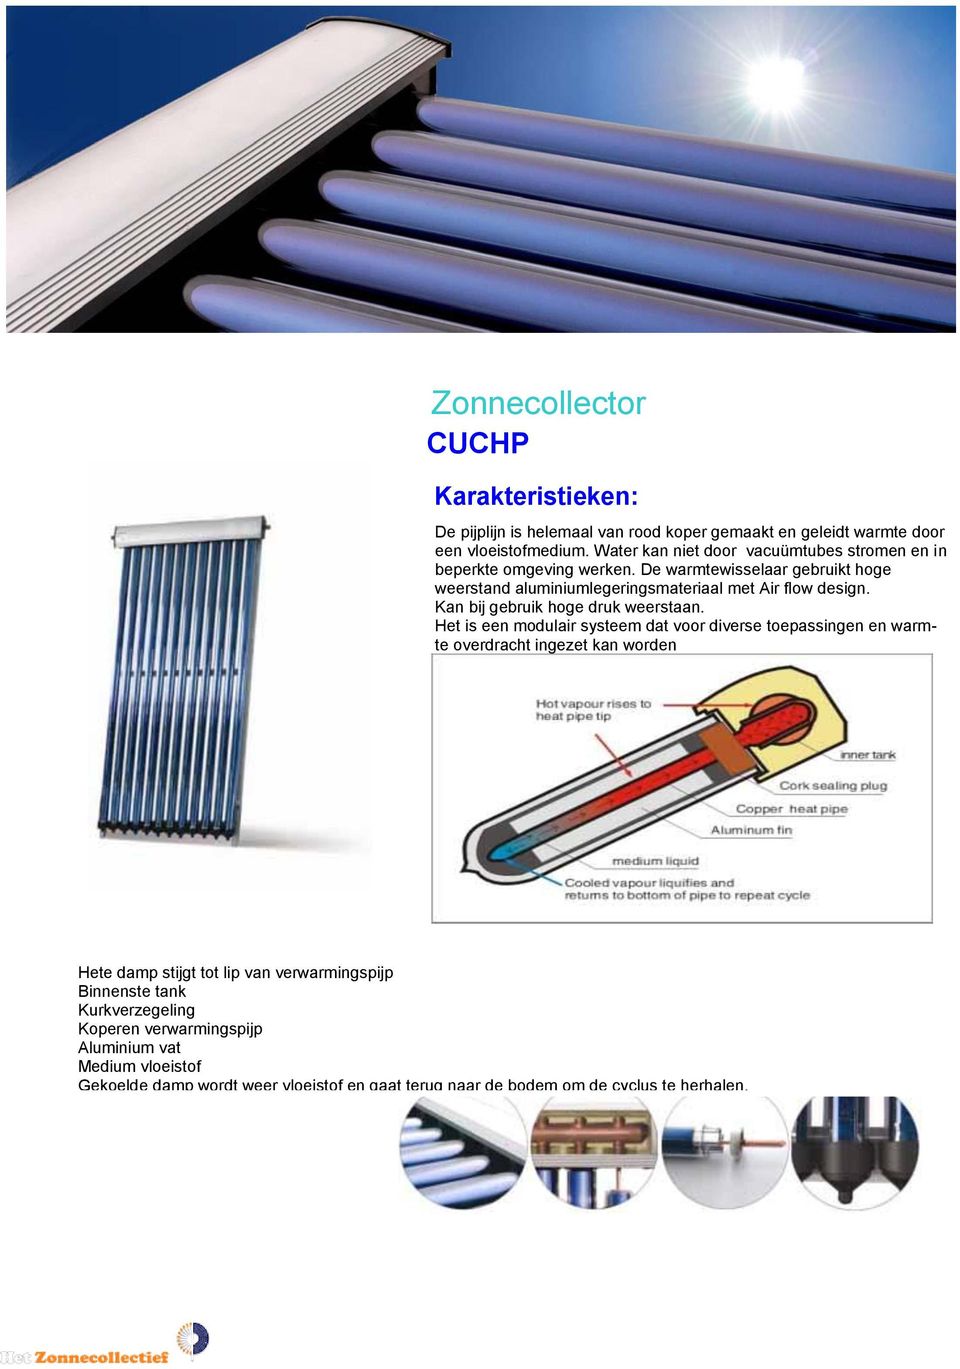 De warmtewisselaar gebruikt hoge weerstand aluminiumlegeringsmateriaal met Air flow design. Kan bij gebruik hoge druk weerstaan.